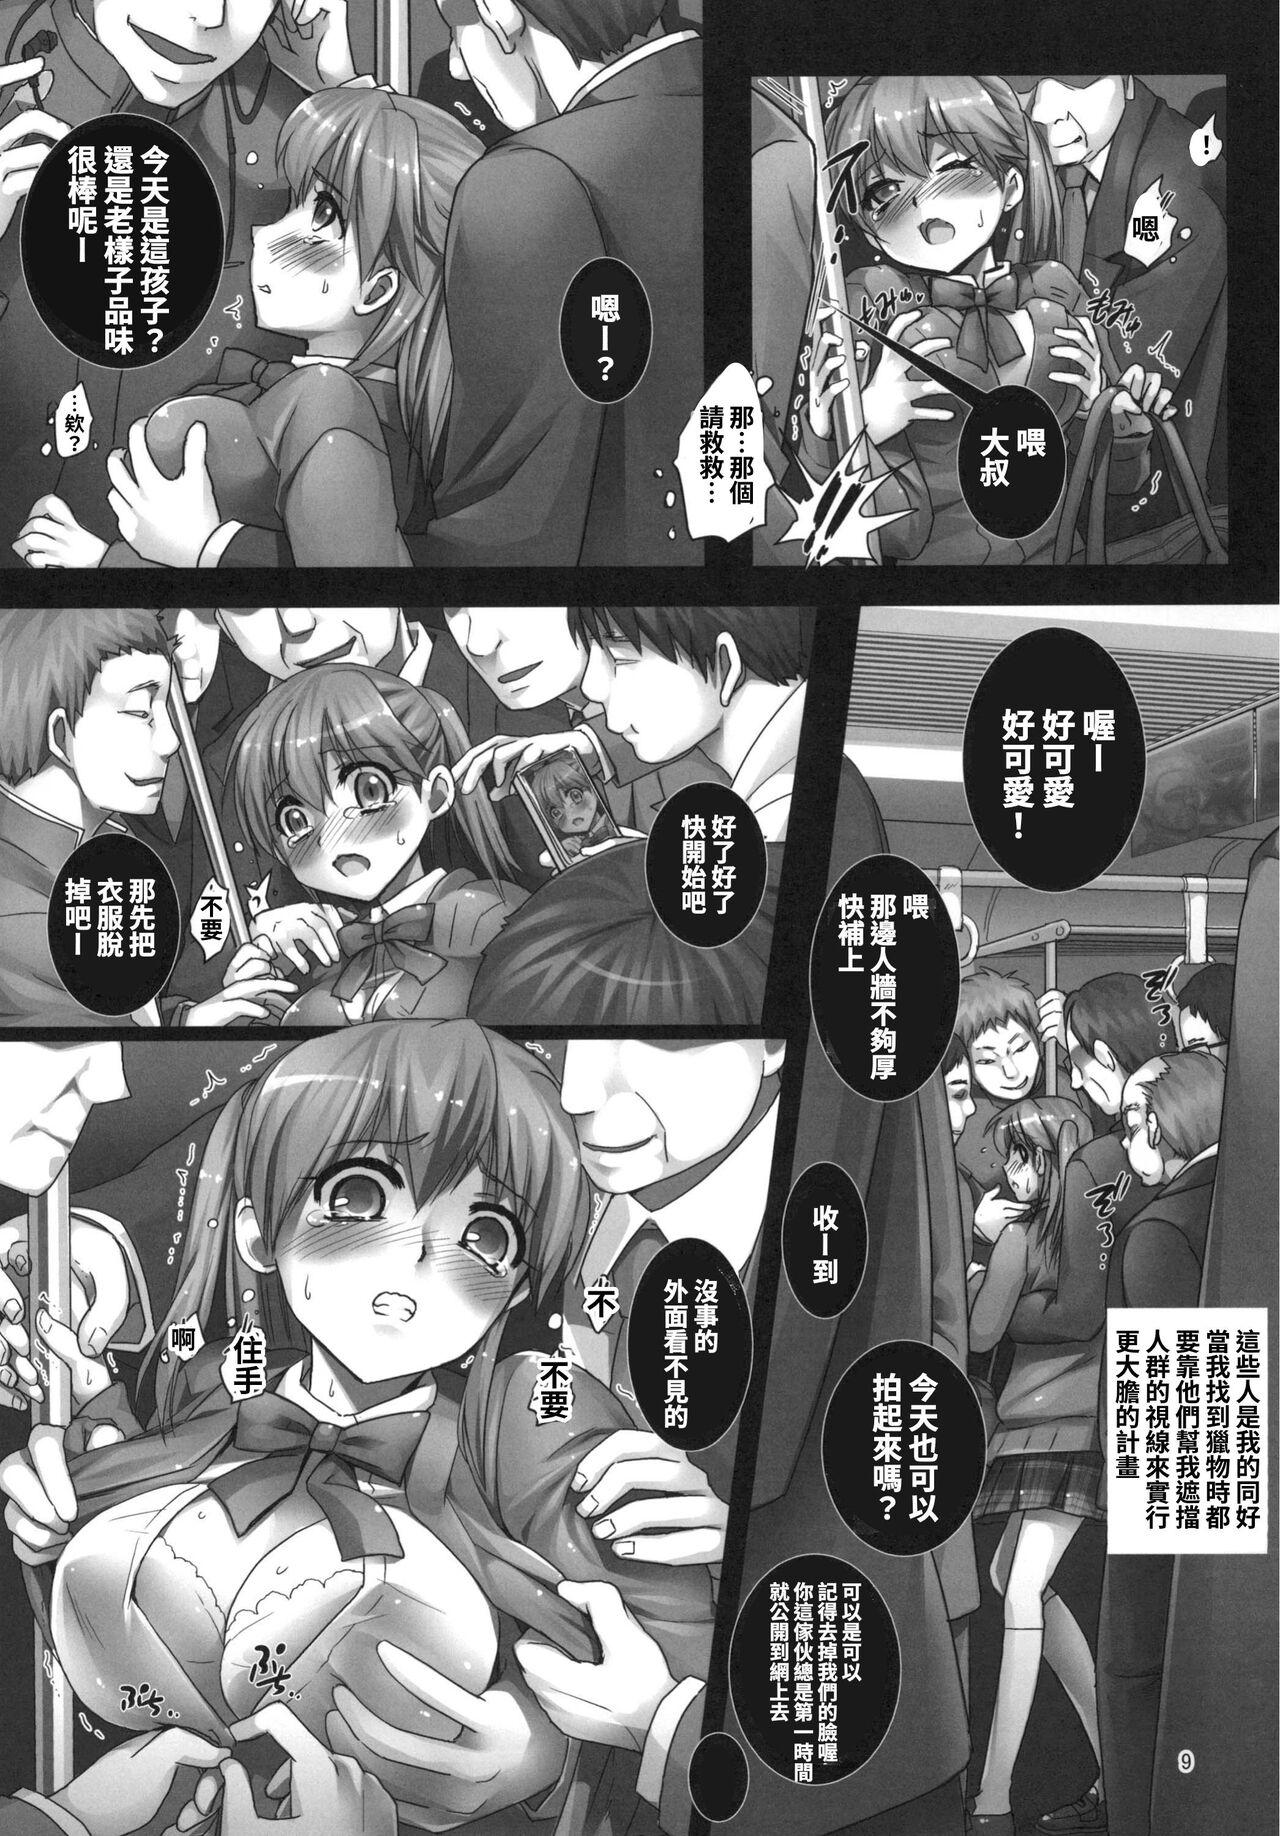 Titten 【繁体中文版】朝の満員電車で処女JKをどこまで開発できるのか - Original Amature - Page 9